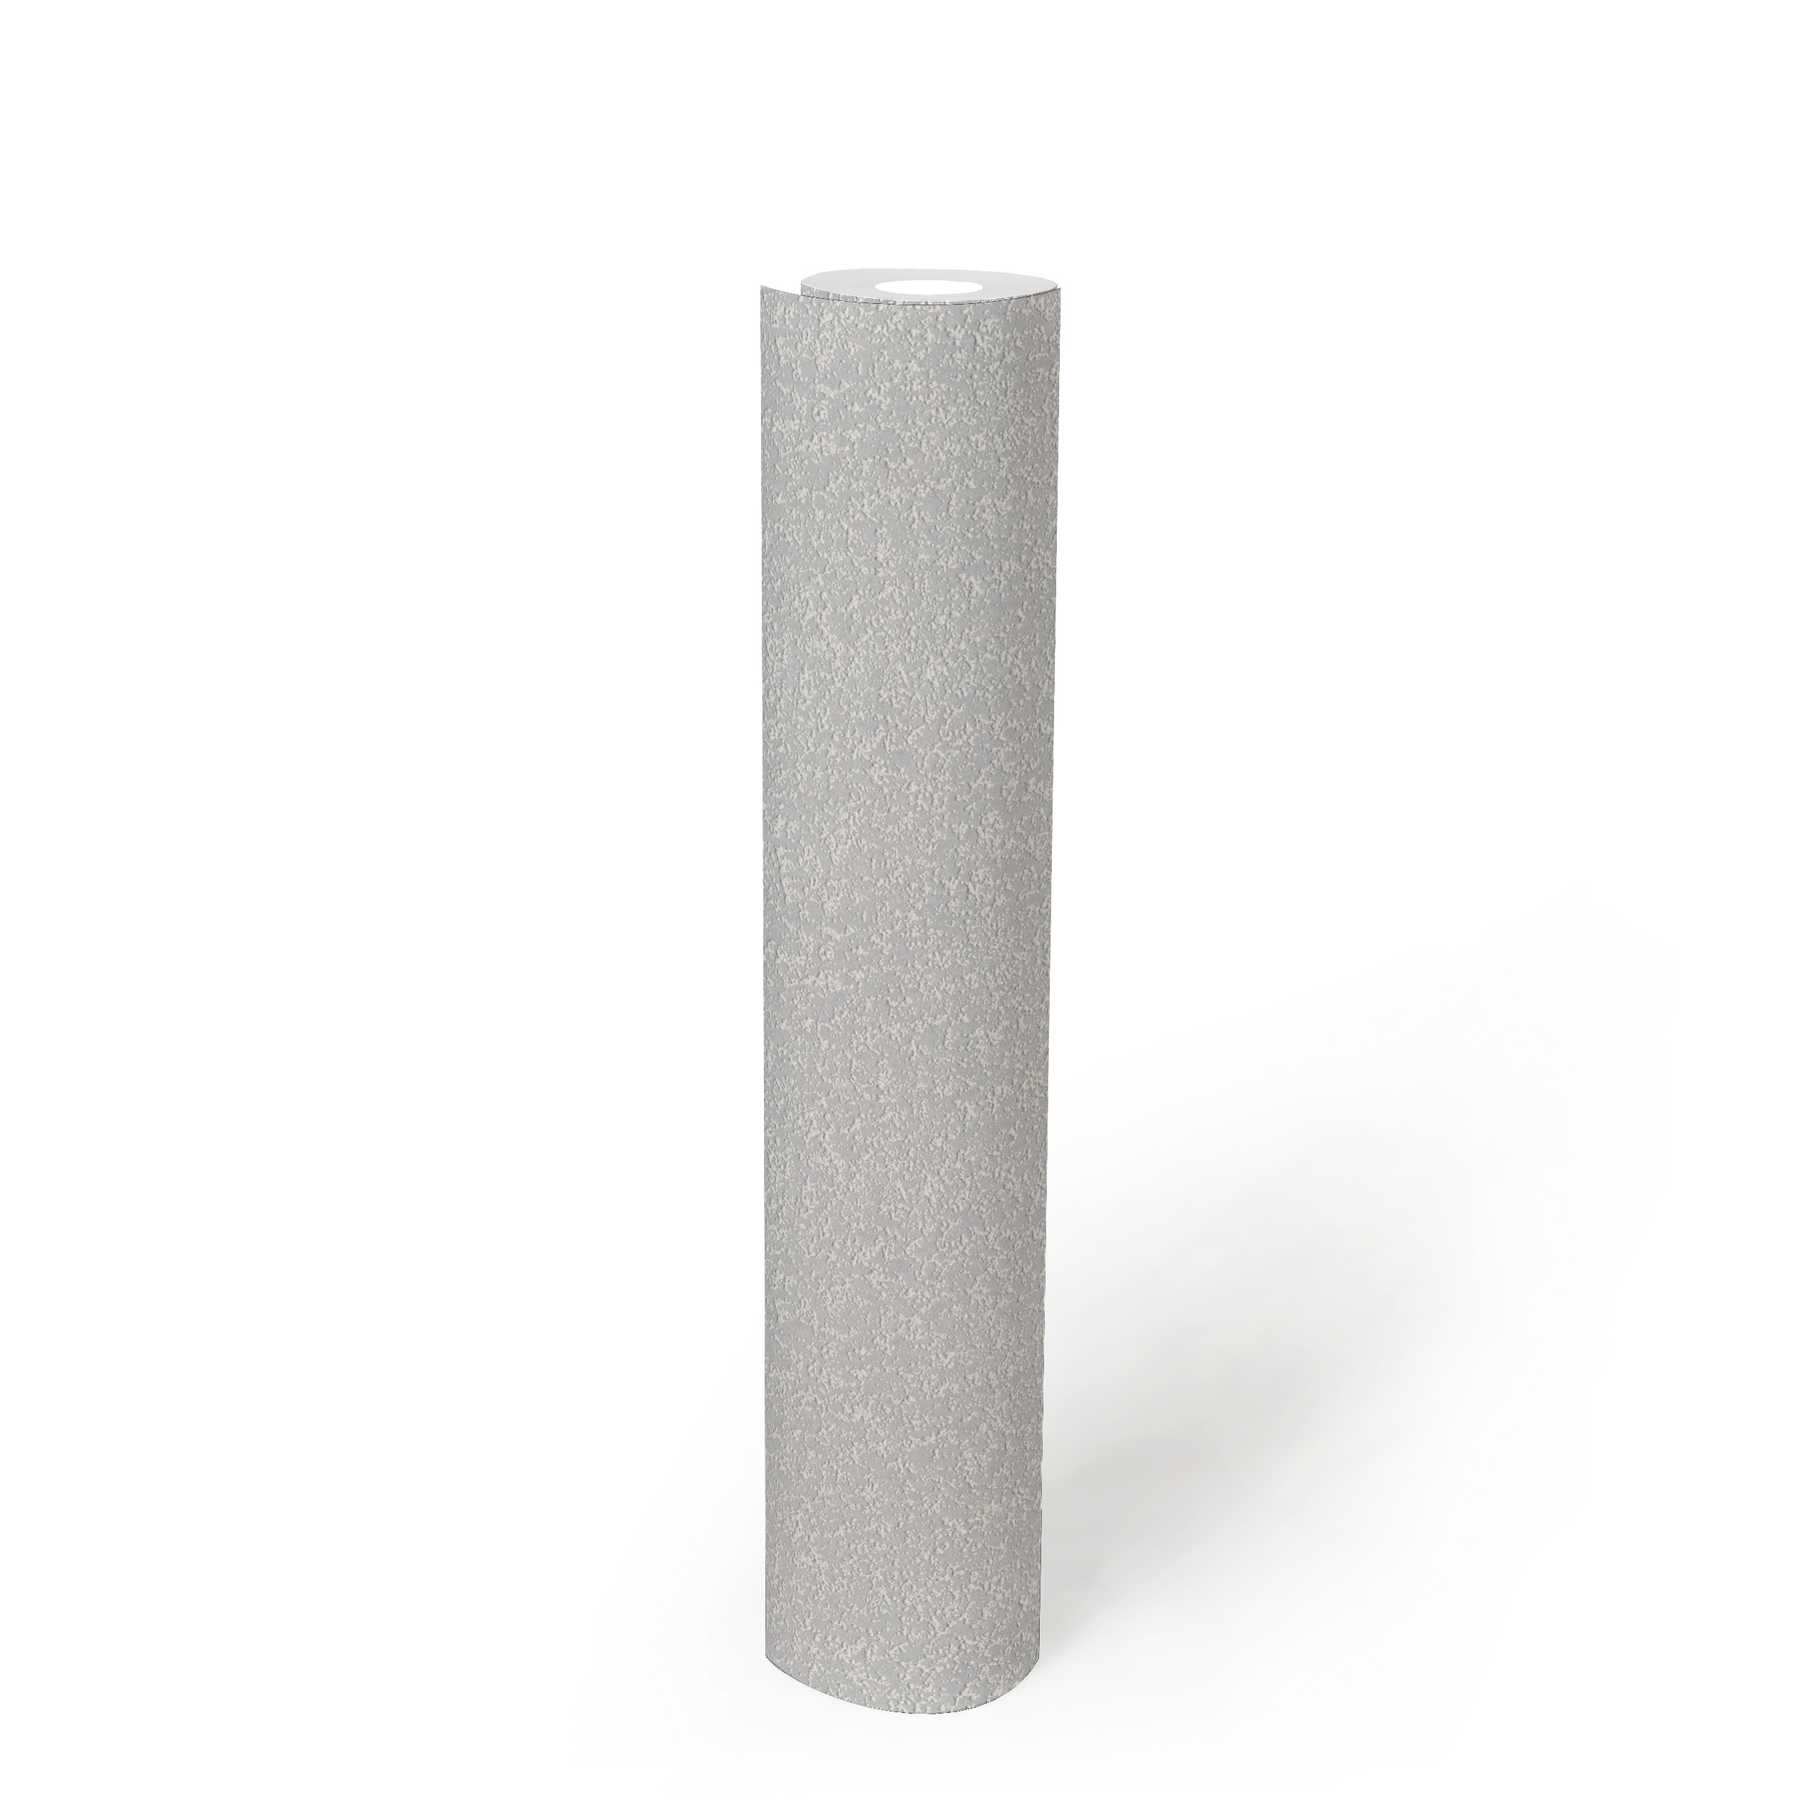             Carta da parati testurizzata con struttura a sabbia granulosa - verniciabile, bianca
        